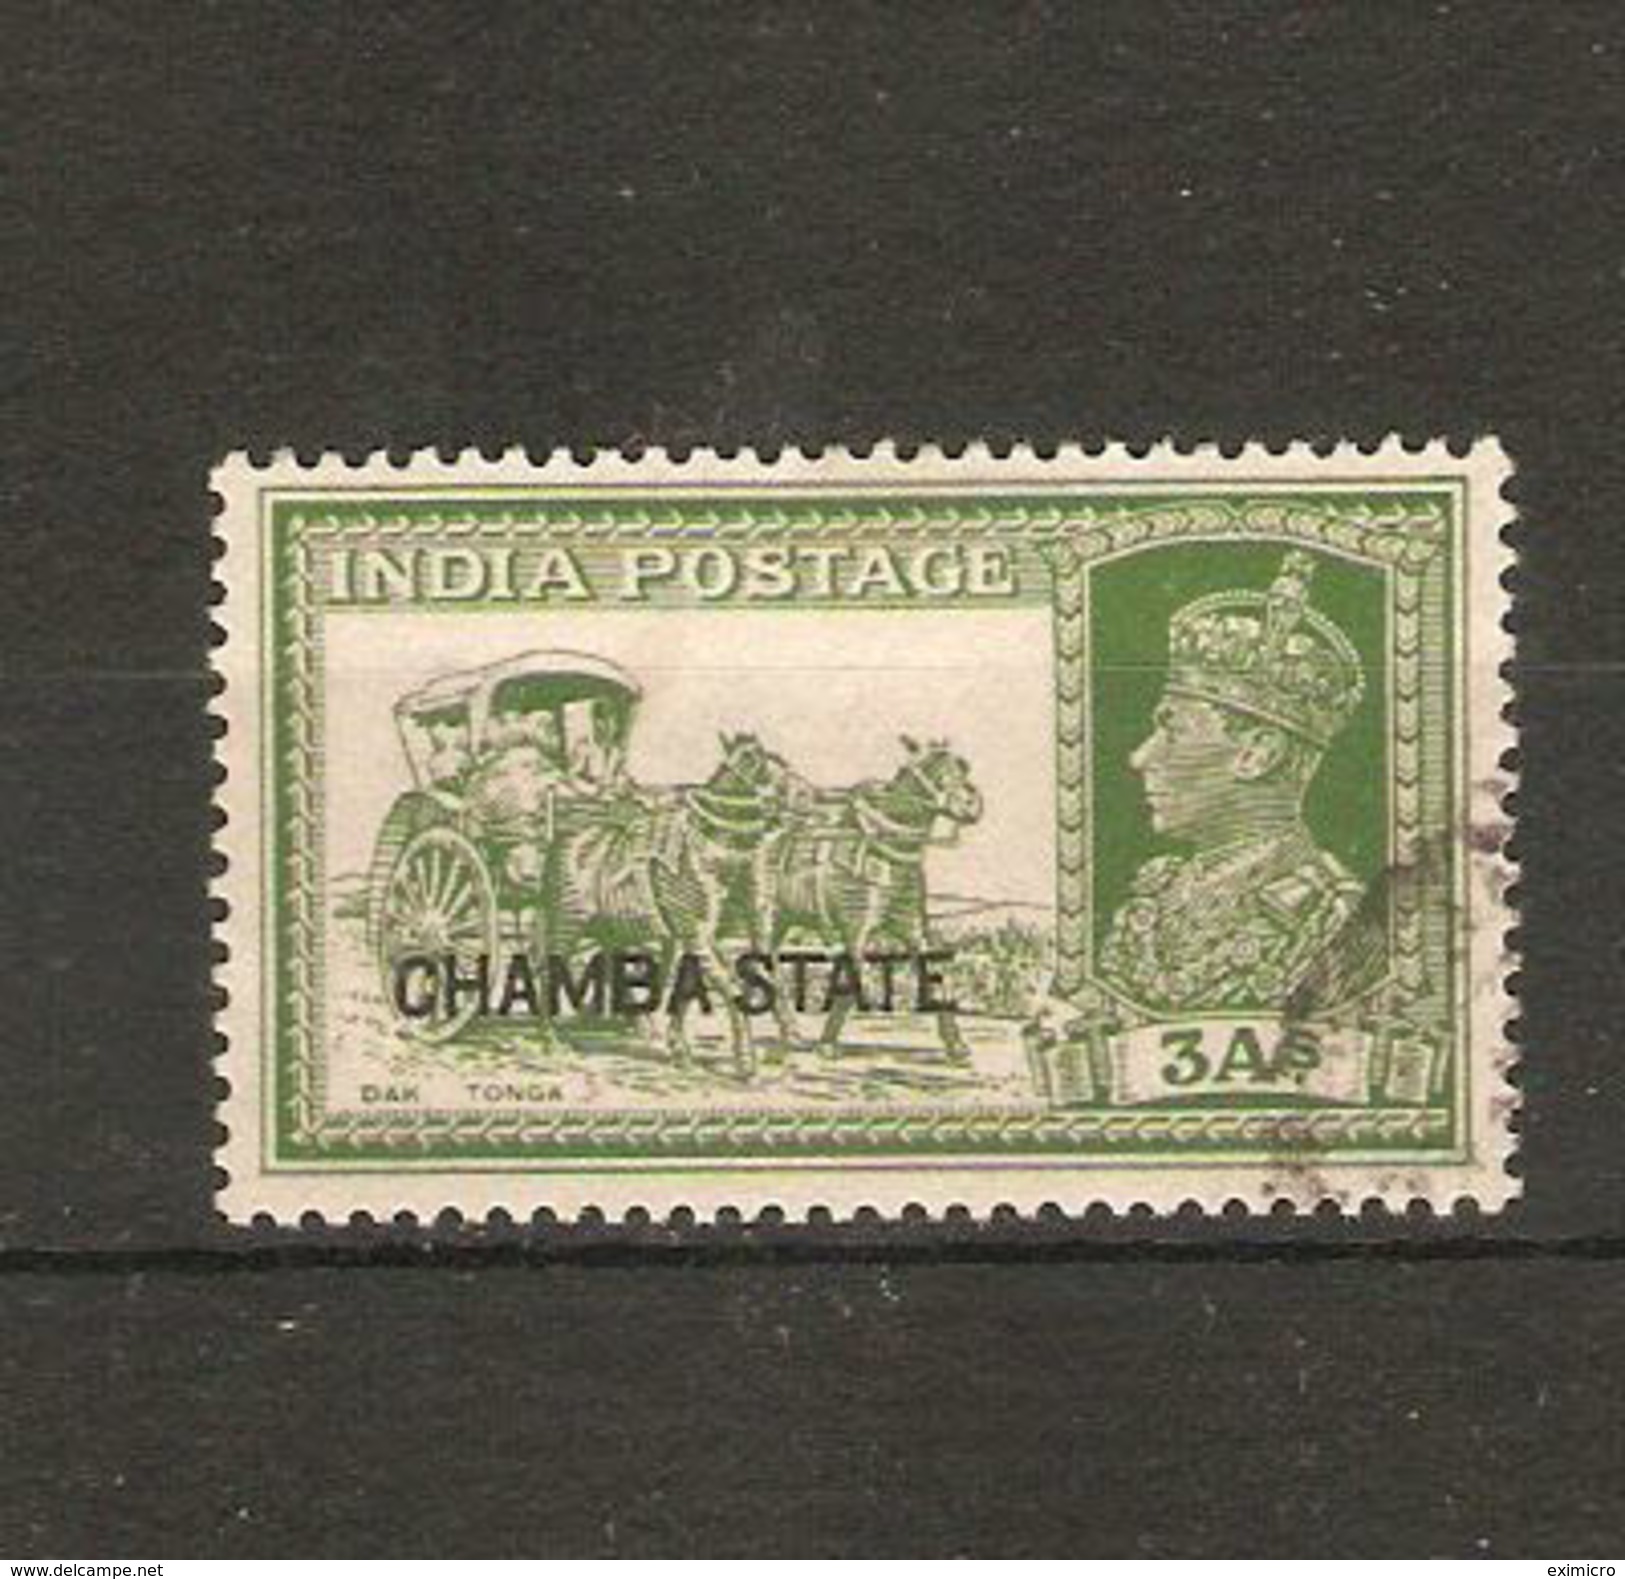 INDIA - CHAMBA 1938 3a  SG 88 FINE USED Cat £50 - Chamba